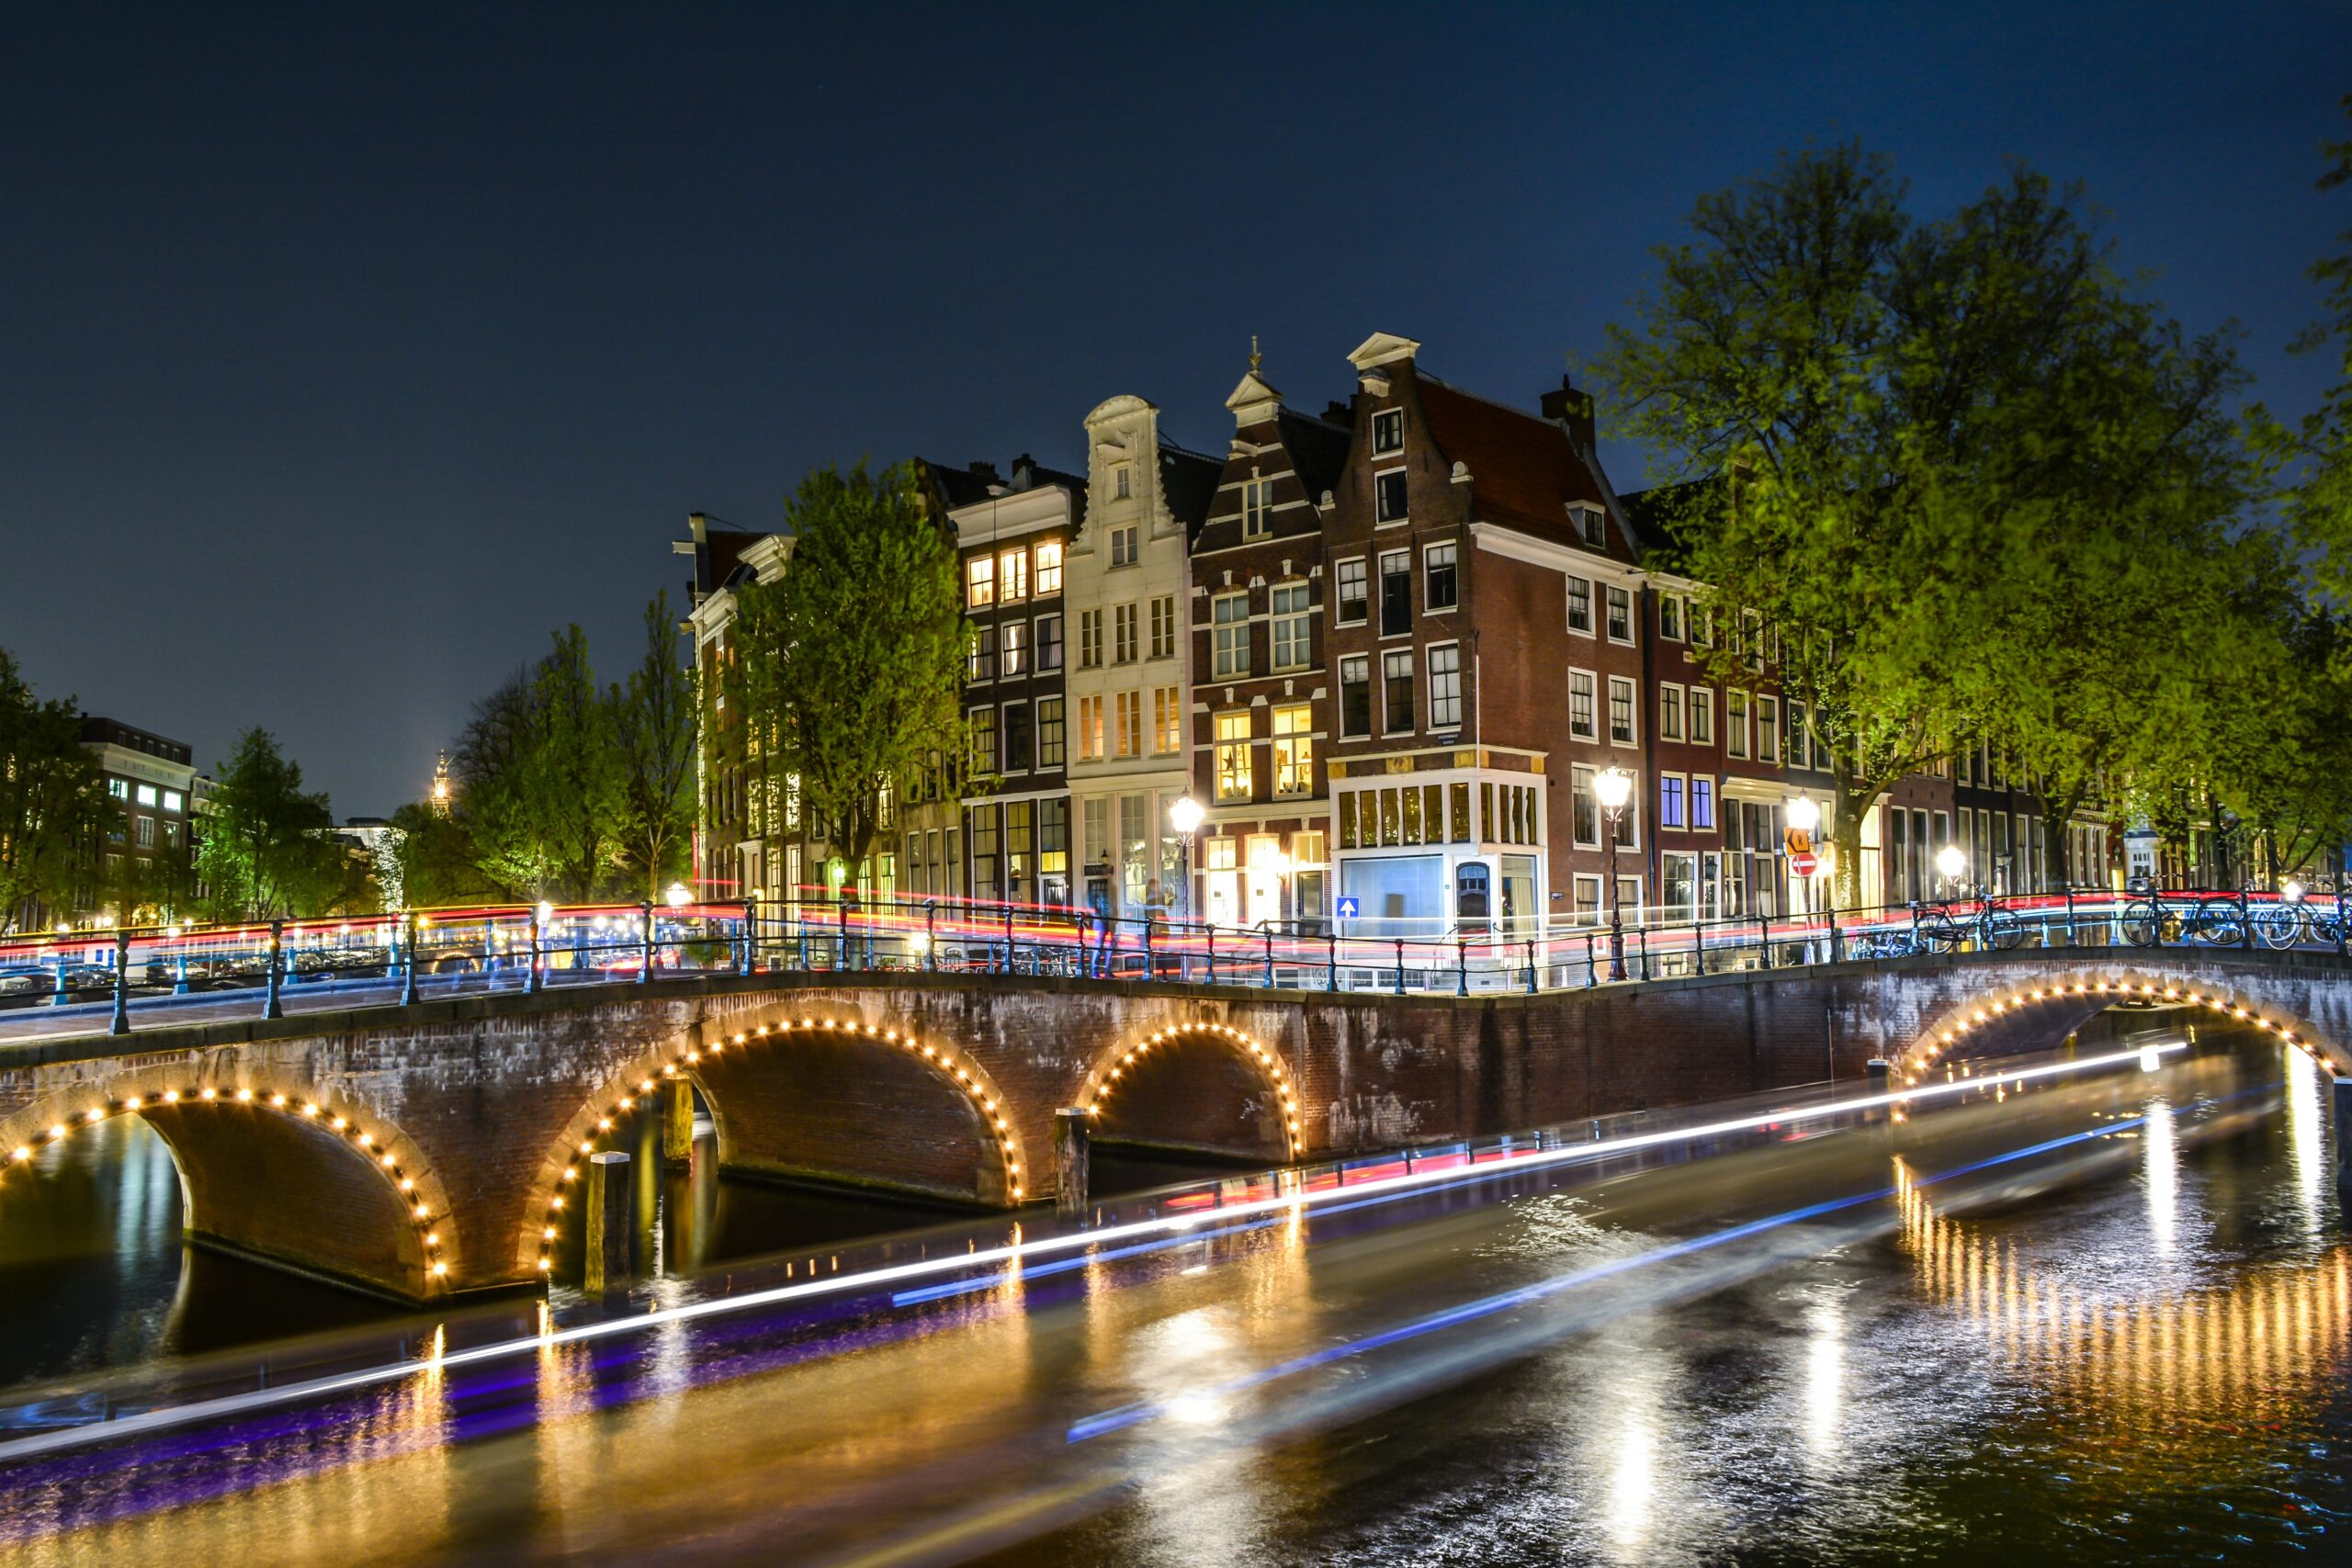 Beautiful night in Amsterdam